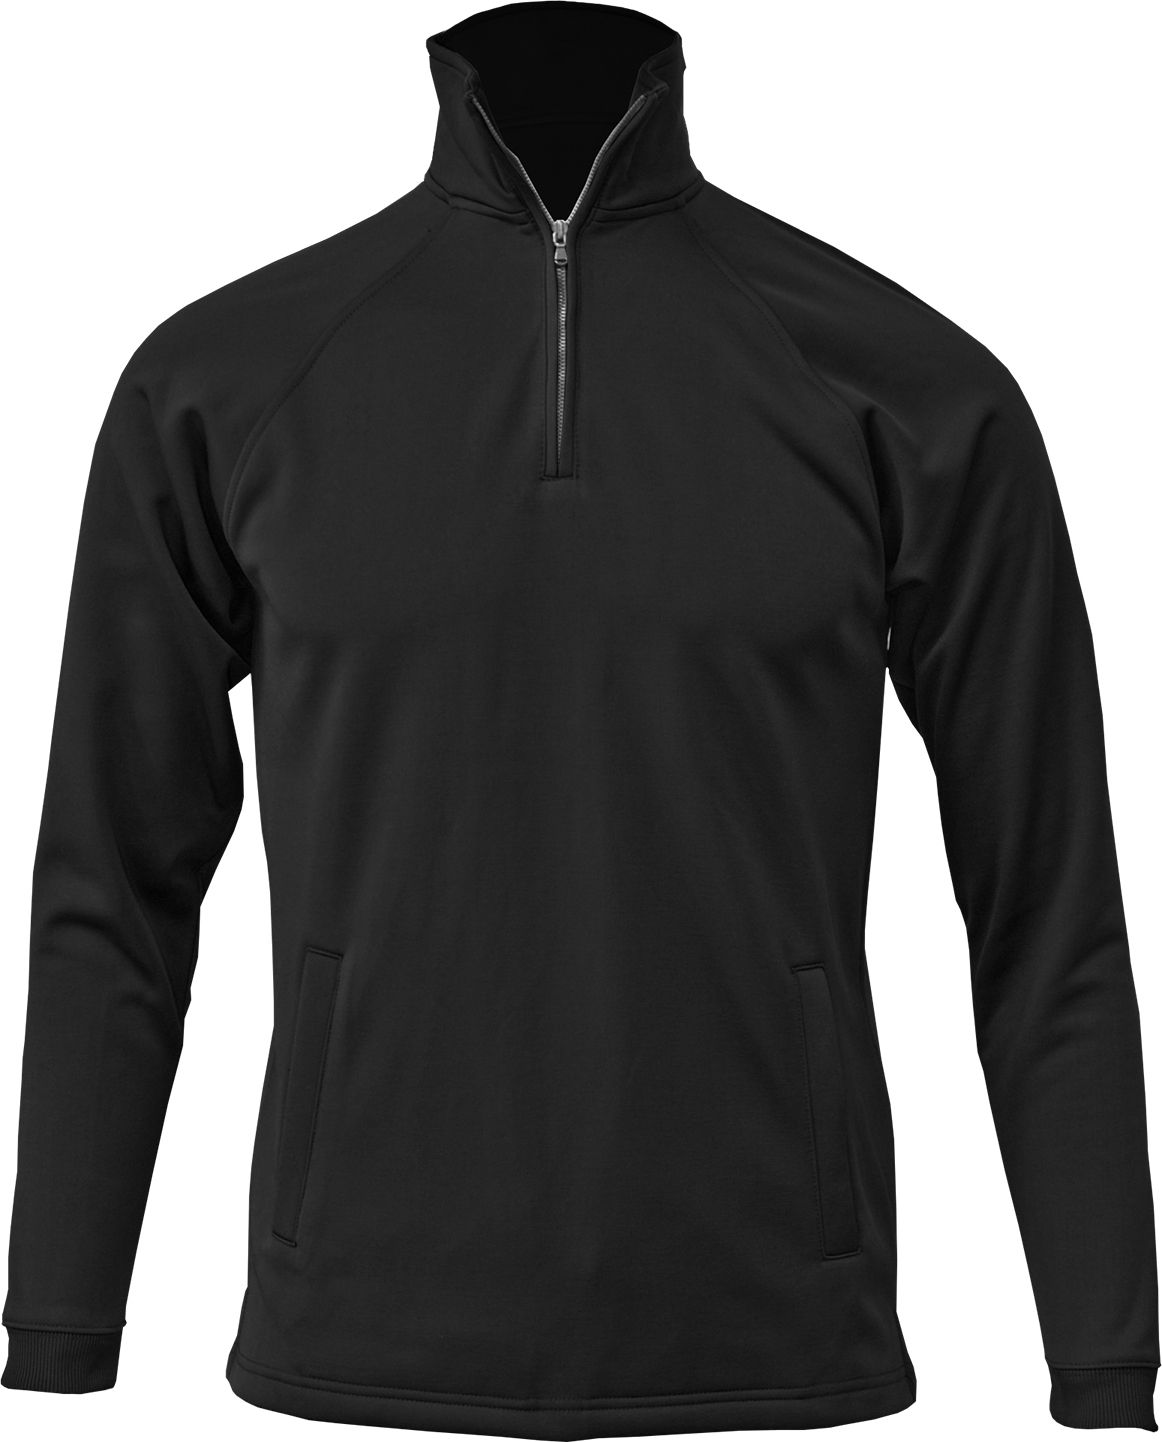 BAW Athletic Wear F125Y - Youth Quarter Zip Sweatshirt